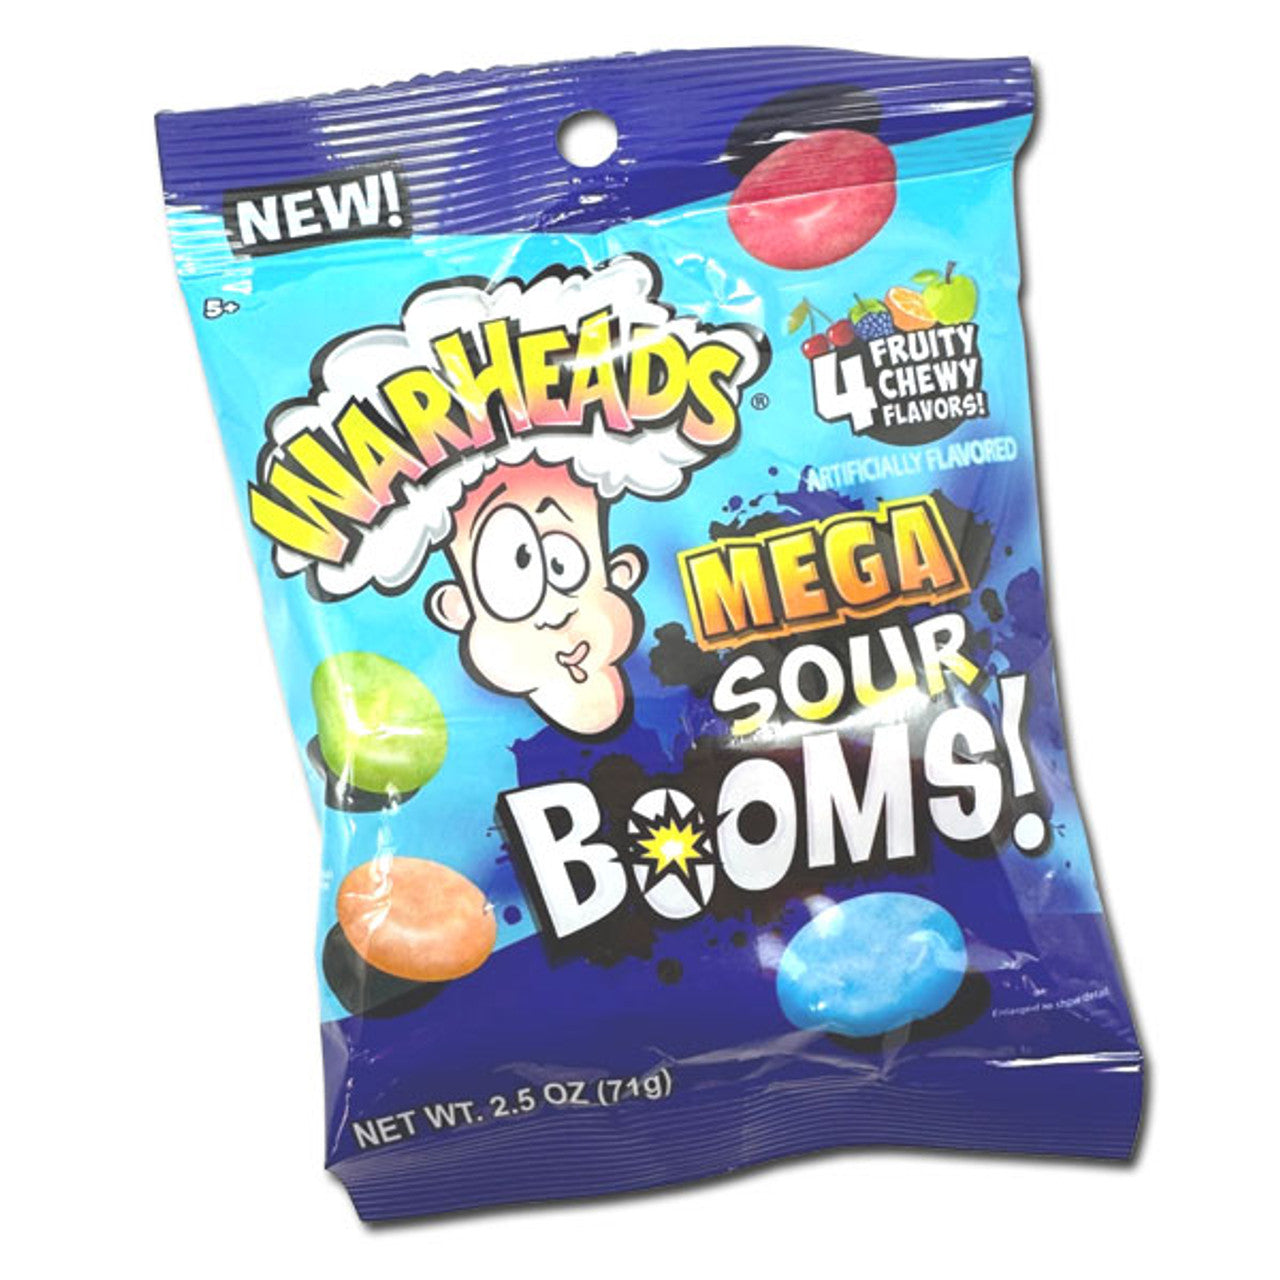 Warheads Mega Sour Booms! - 2.5oz